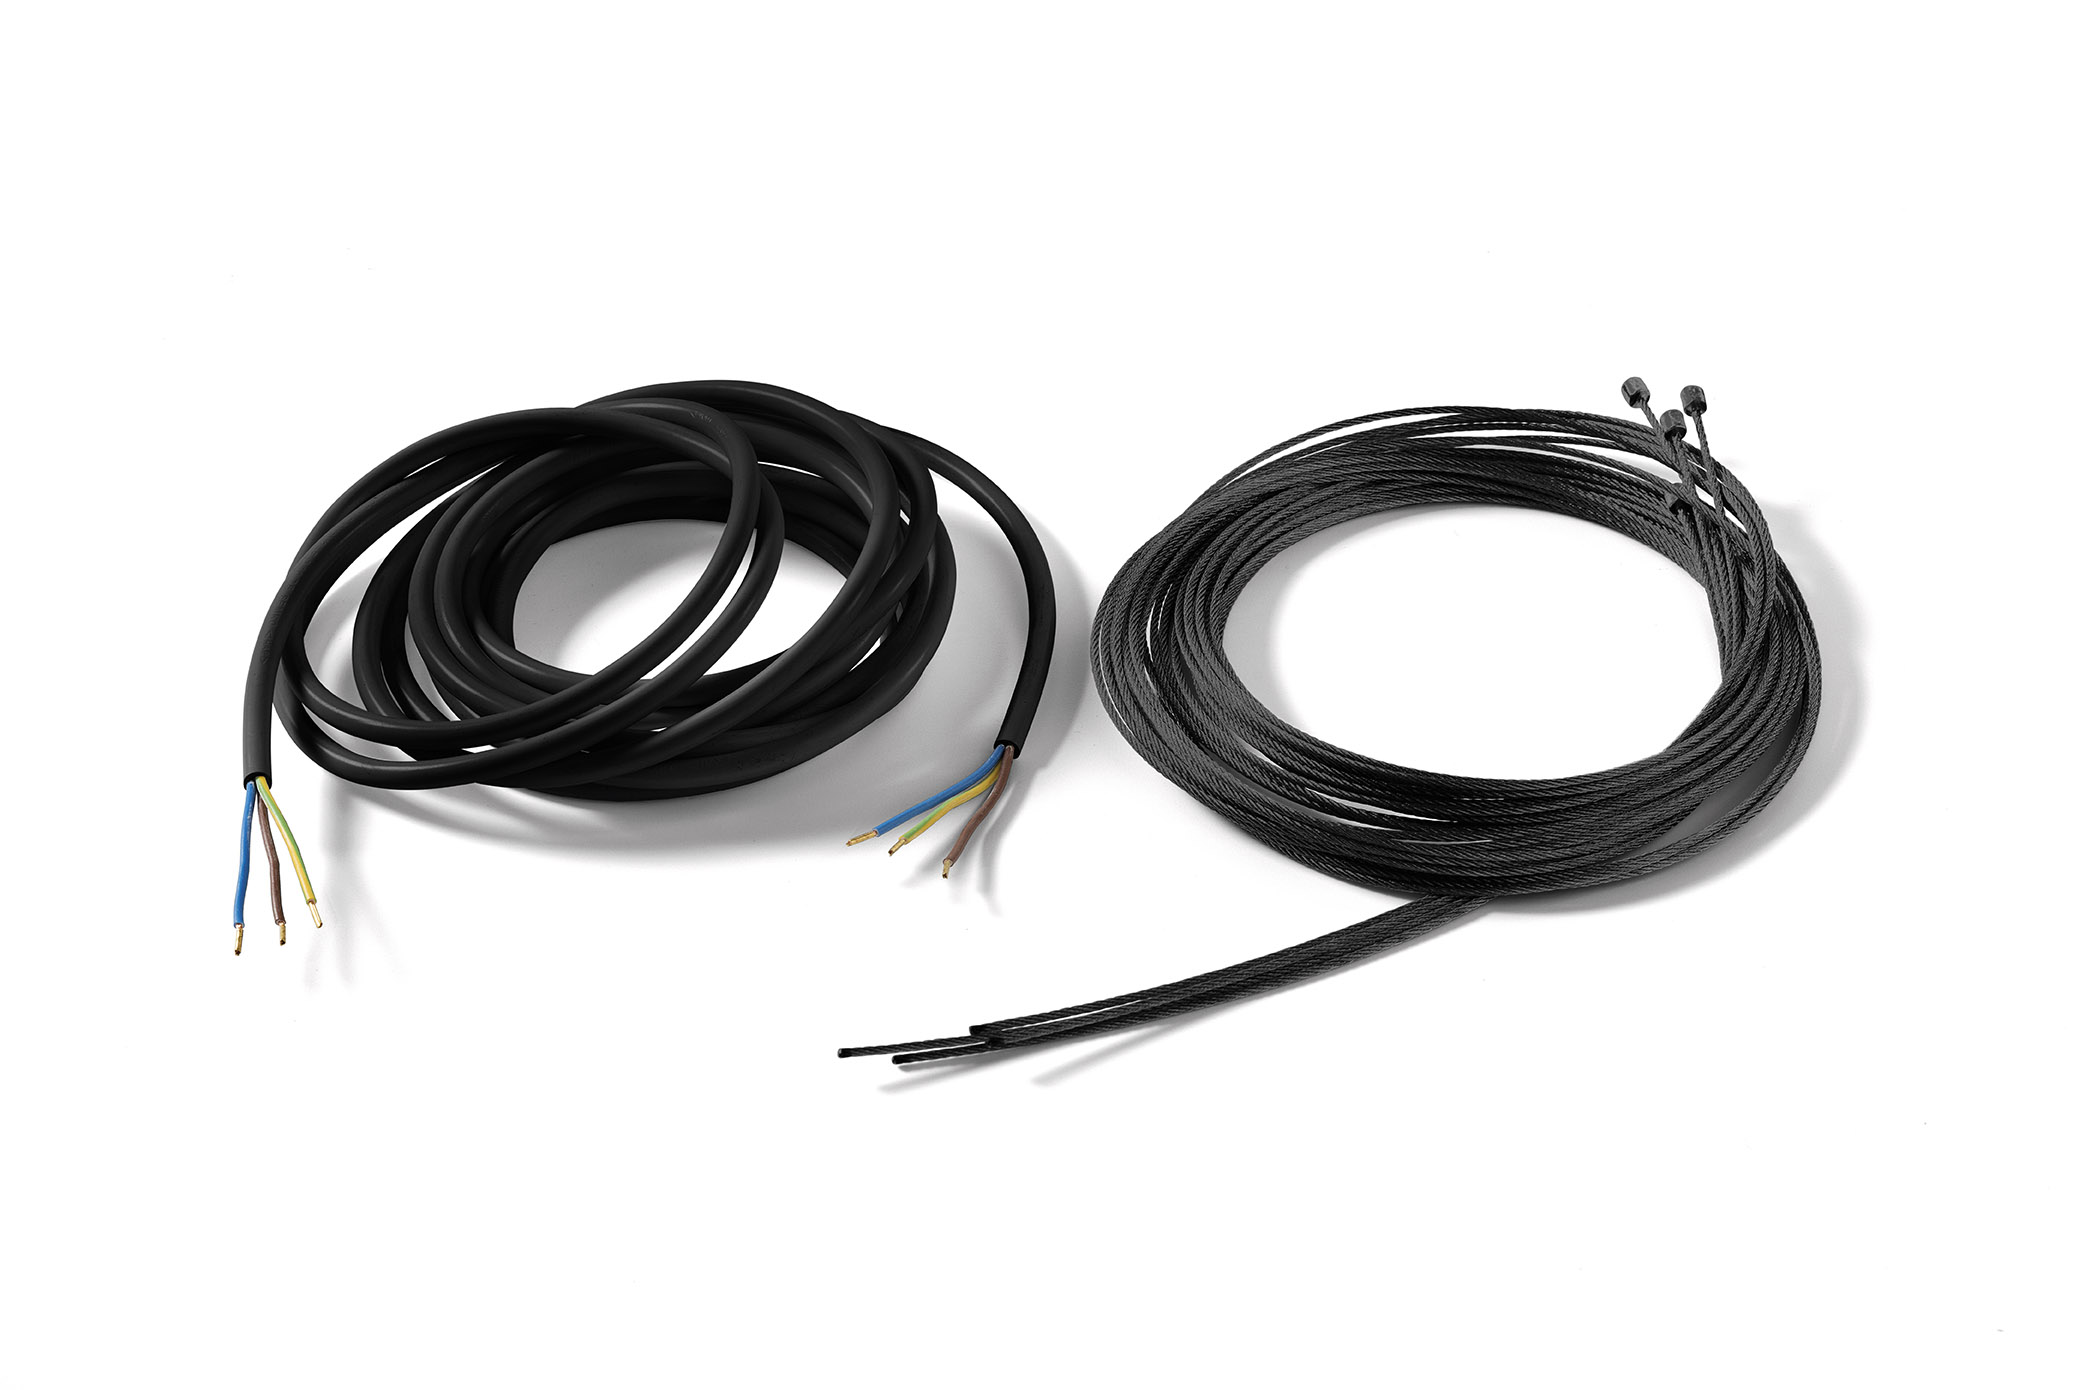 Accessorios 7530100 Alargo cable de acero Novy Phantom Cable